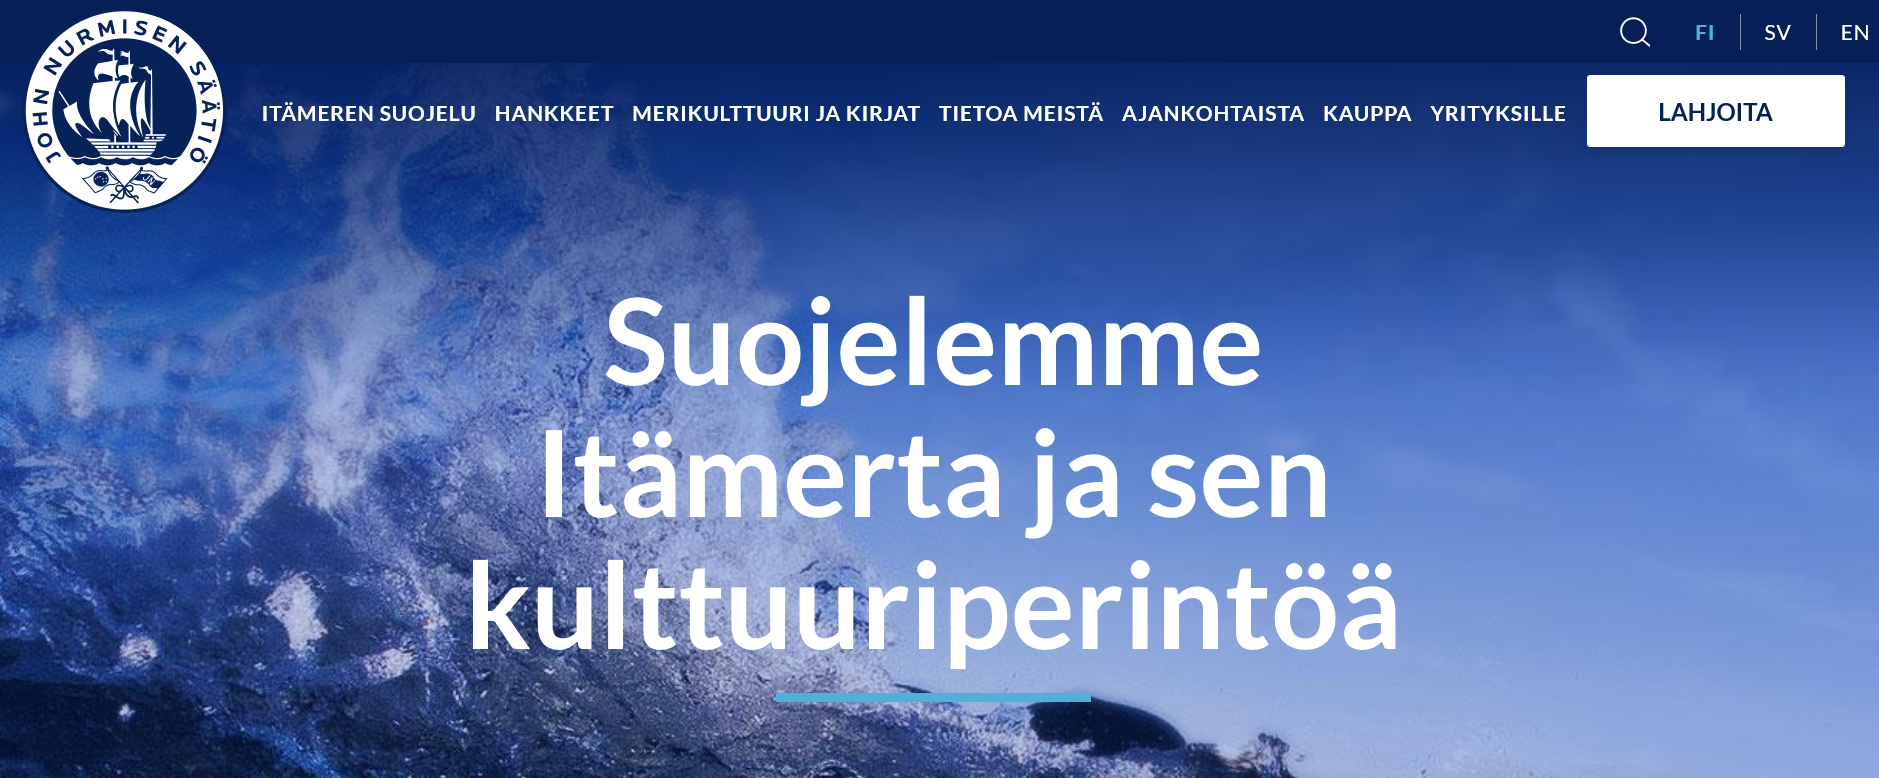 John Nurmisen säätiön laiva-aiheinen logo sinisellä taustalla ja teksti "suojelemme Itämerta ja sen kulttuuriperintöä"